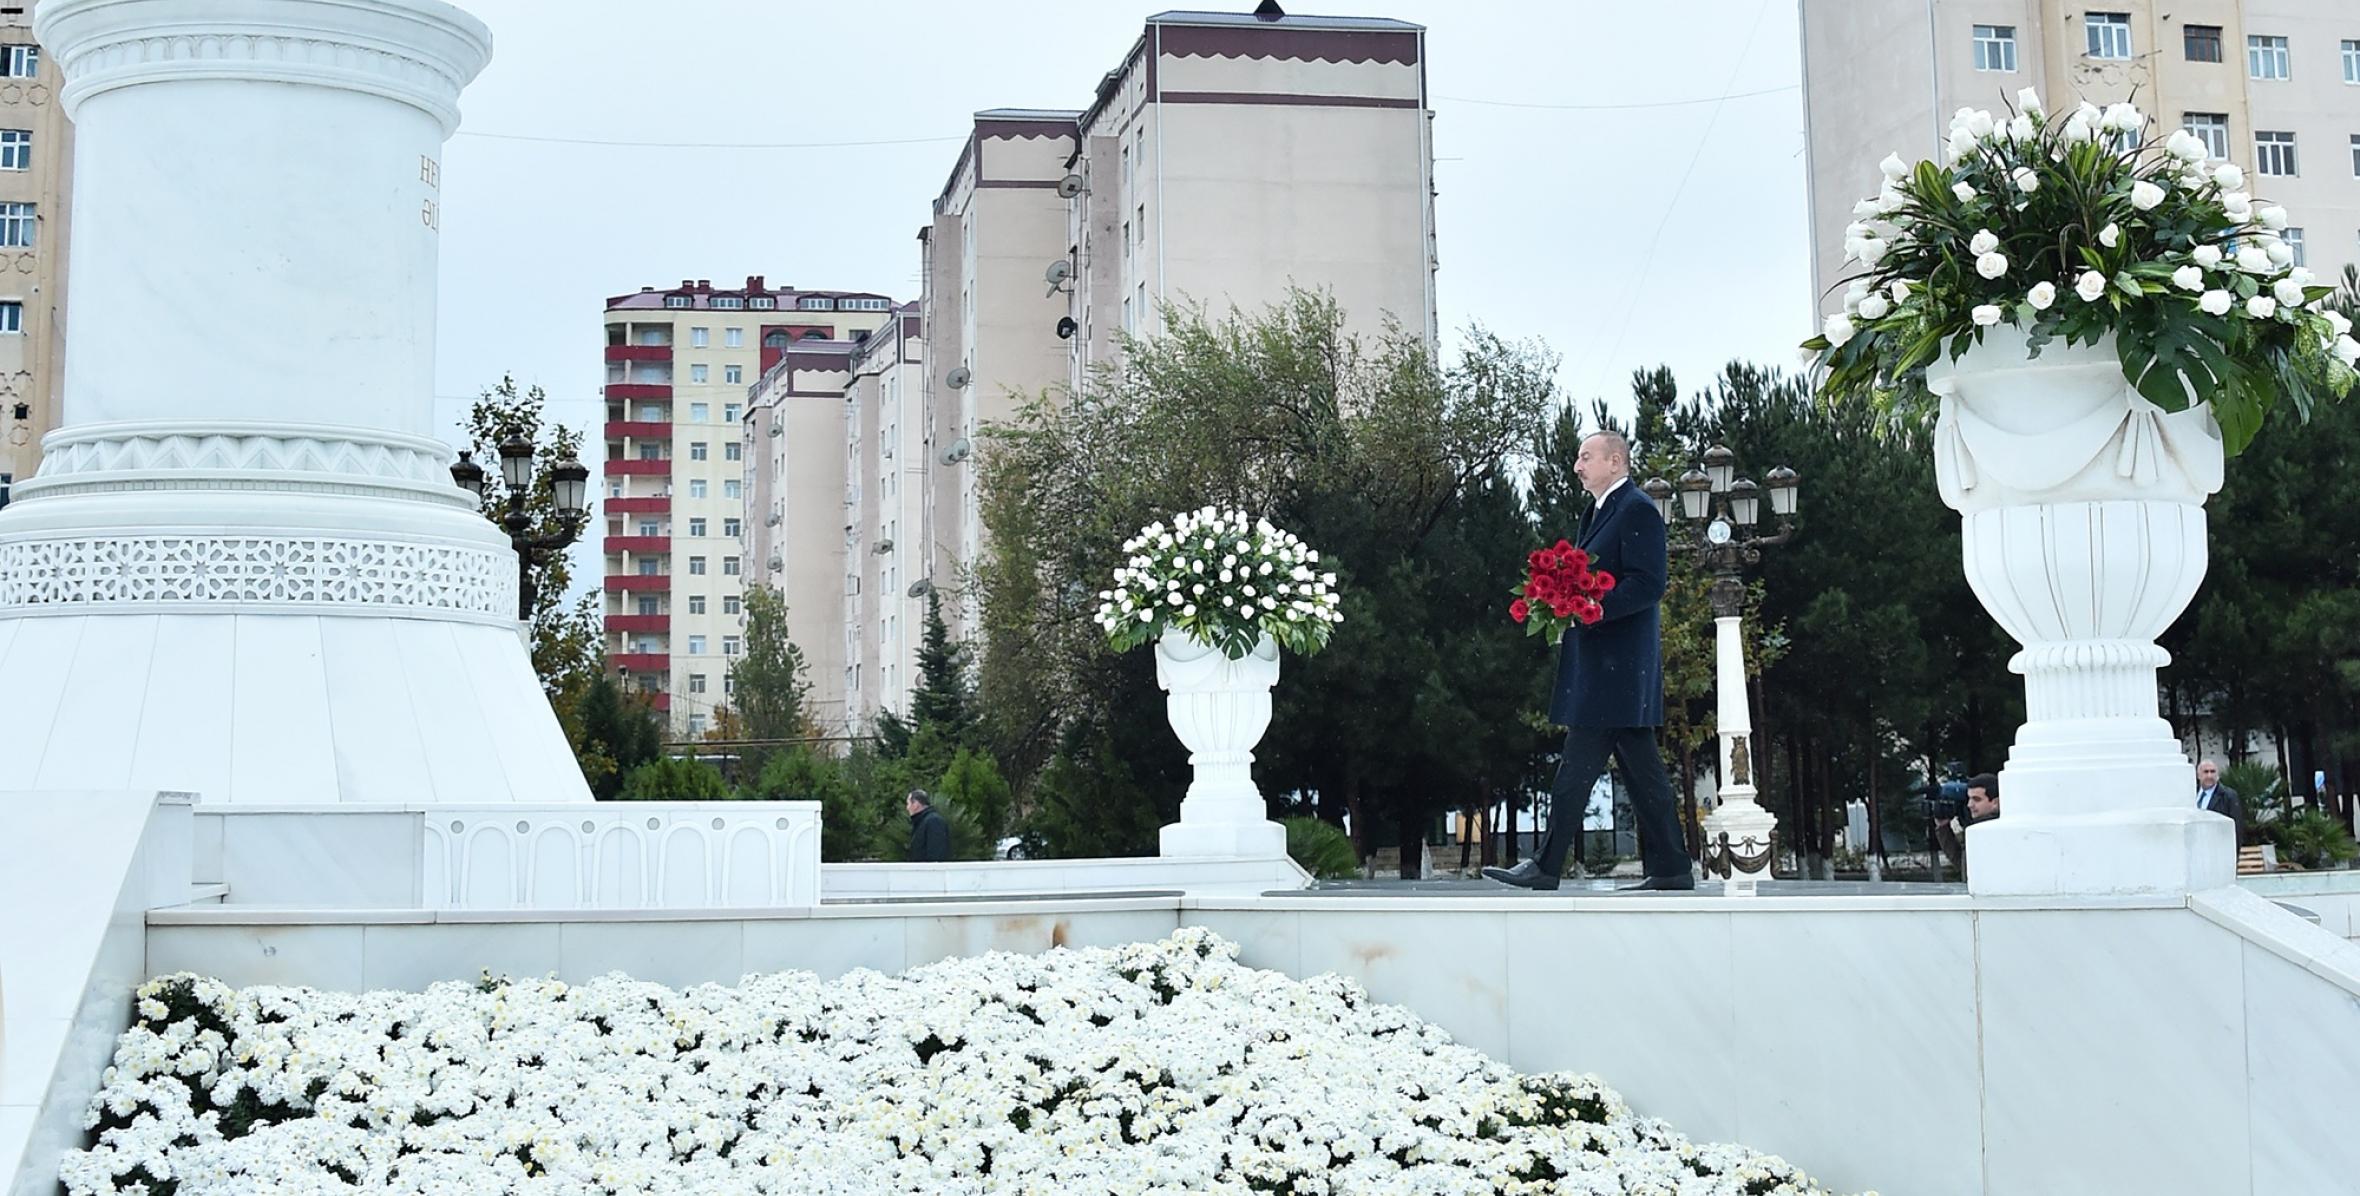 Ilham Aliyev arrived in Sumgayit for visit